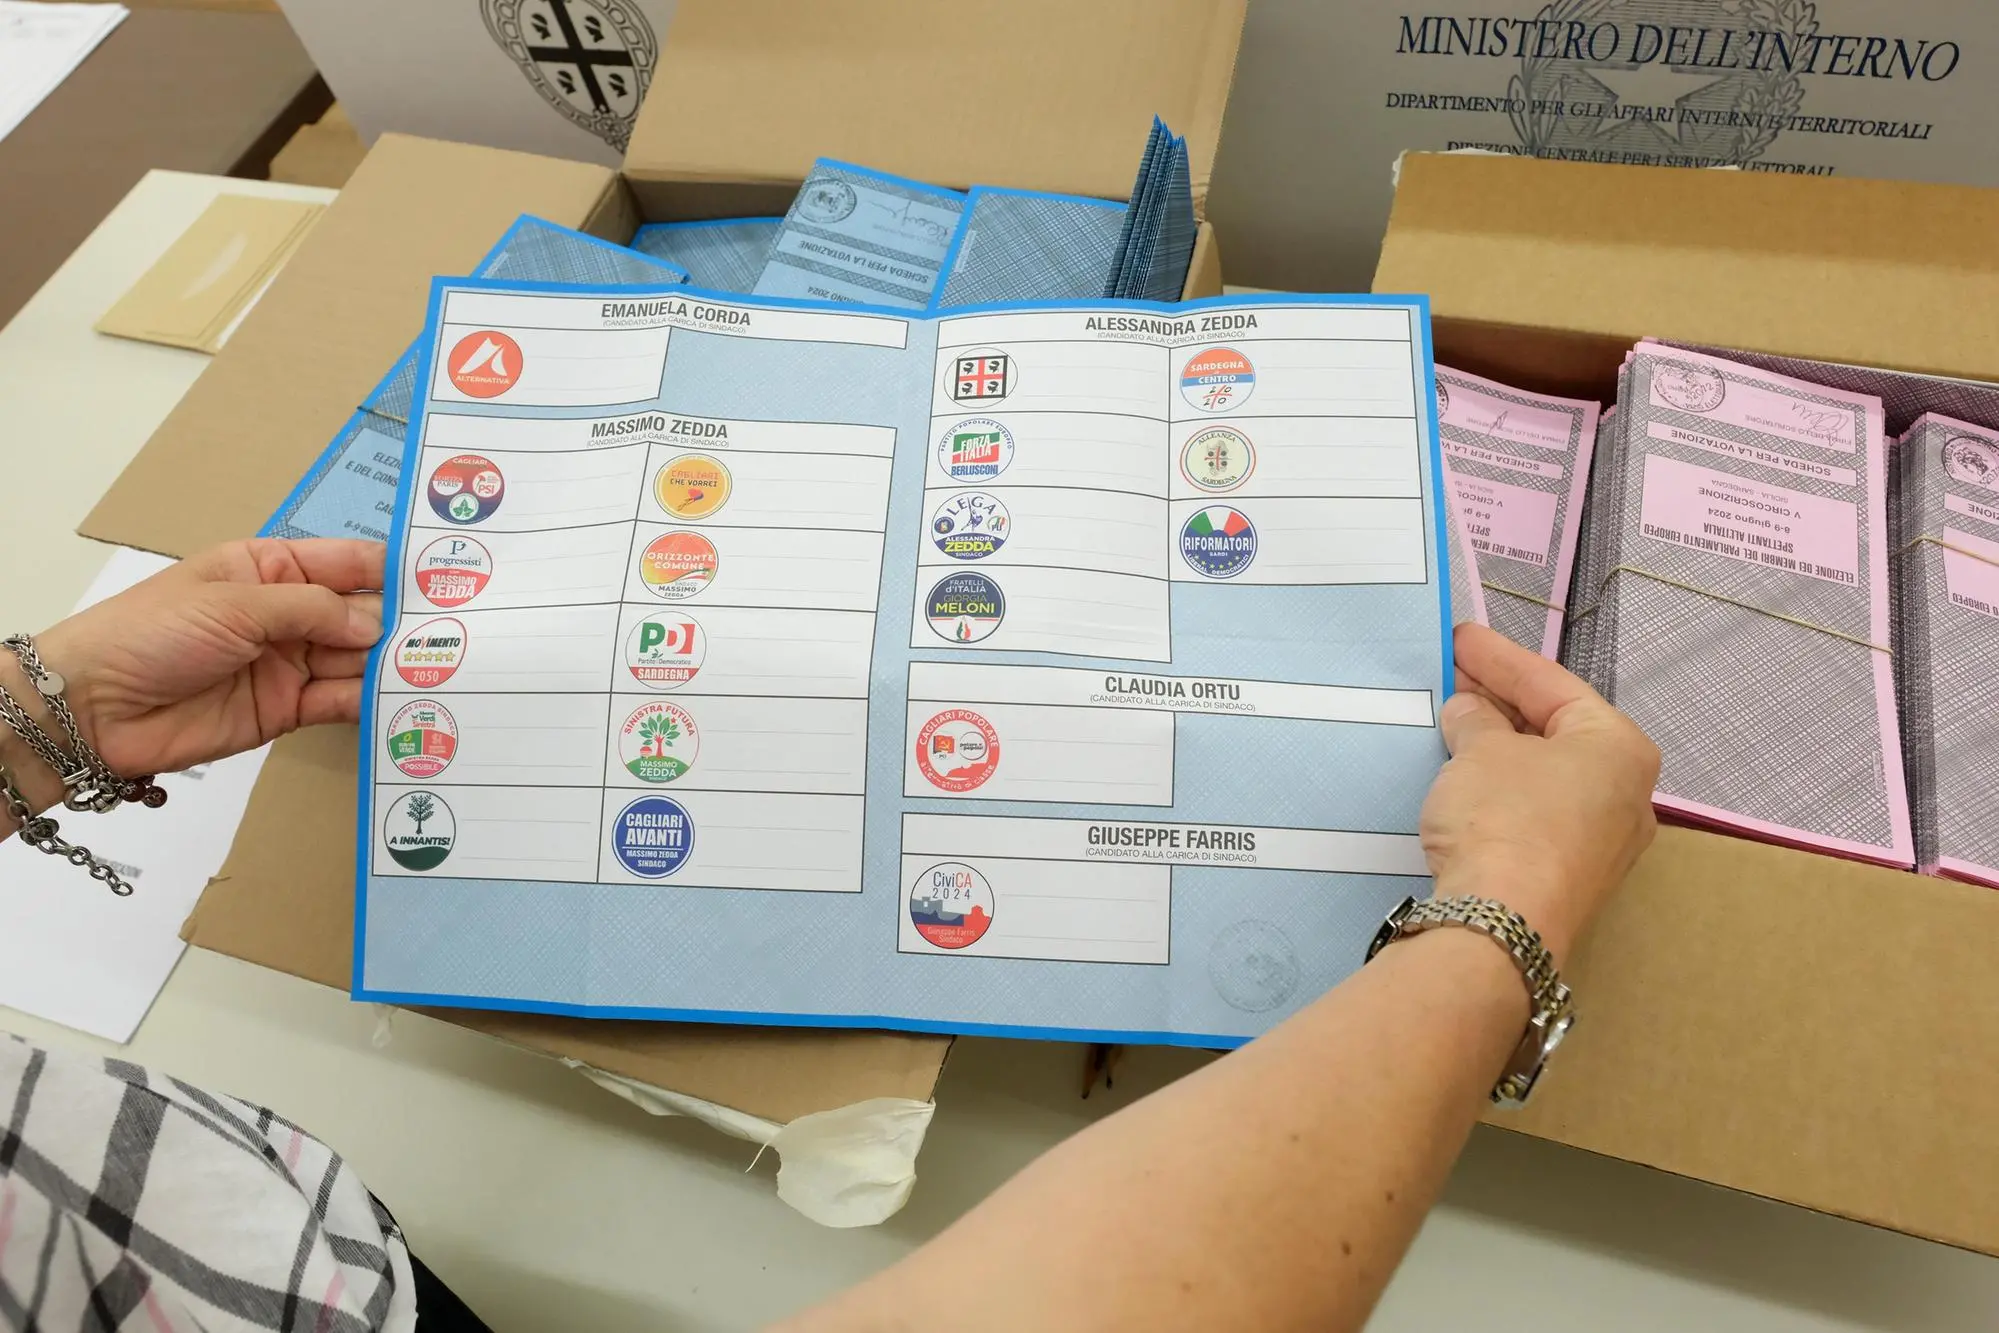 08 06 24 cagliari al voto per elezioni comunali e europee - foto giuseppe ungari